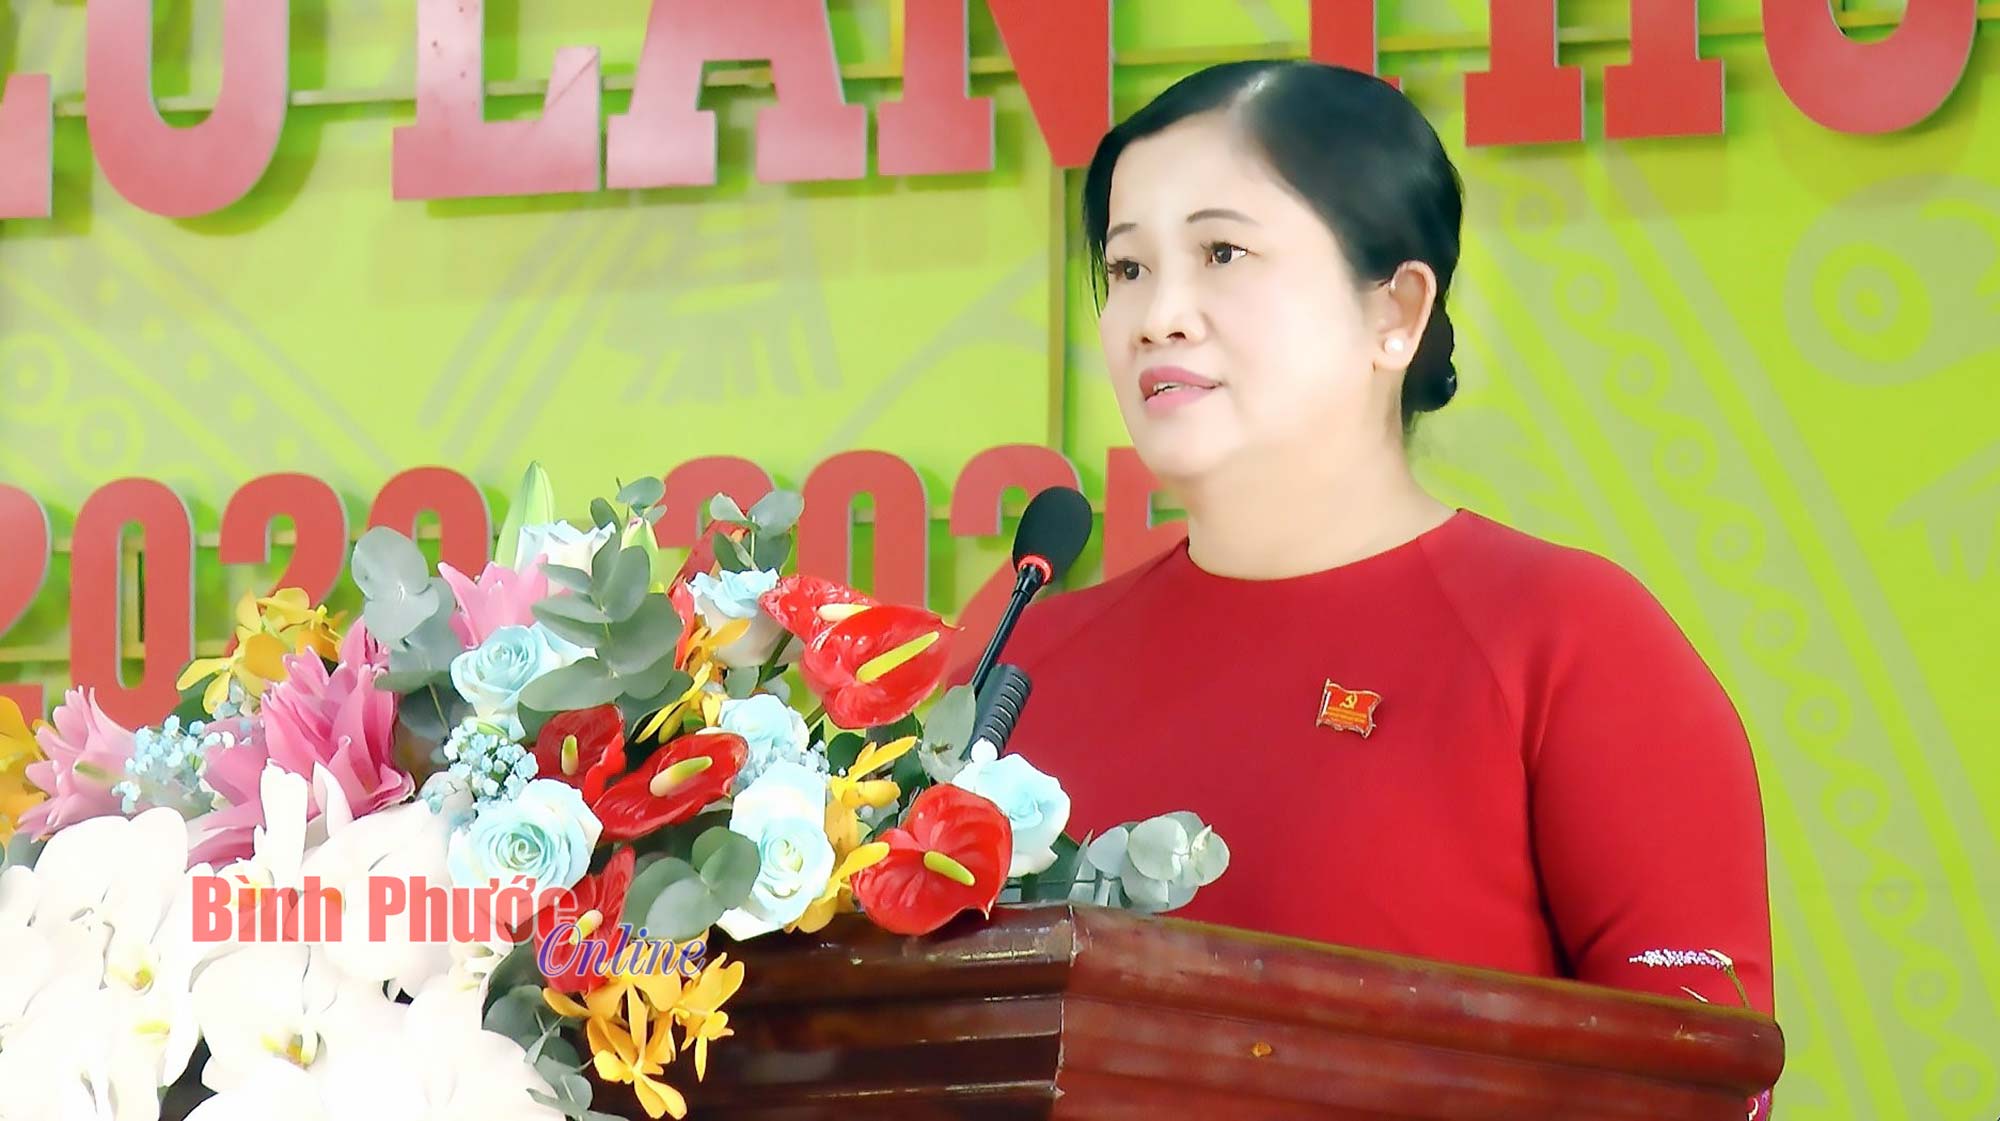 Phó Bí thư Tỉnh ủy, Chủ tịch UBND tỉnh Bình Phước Trần Tuệ Hiền phát biểu tại Đại hội đại biểu lần thứ XIV Đảng bộ Công ty TNHH MTV cao su Lộc Ninh, nhiệm kỳ 2020-2025